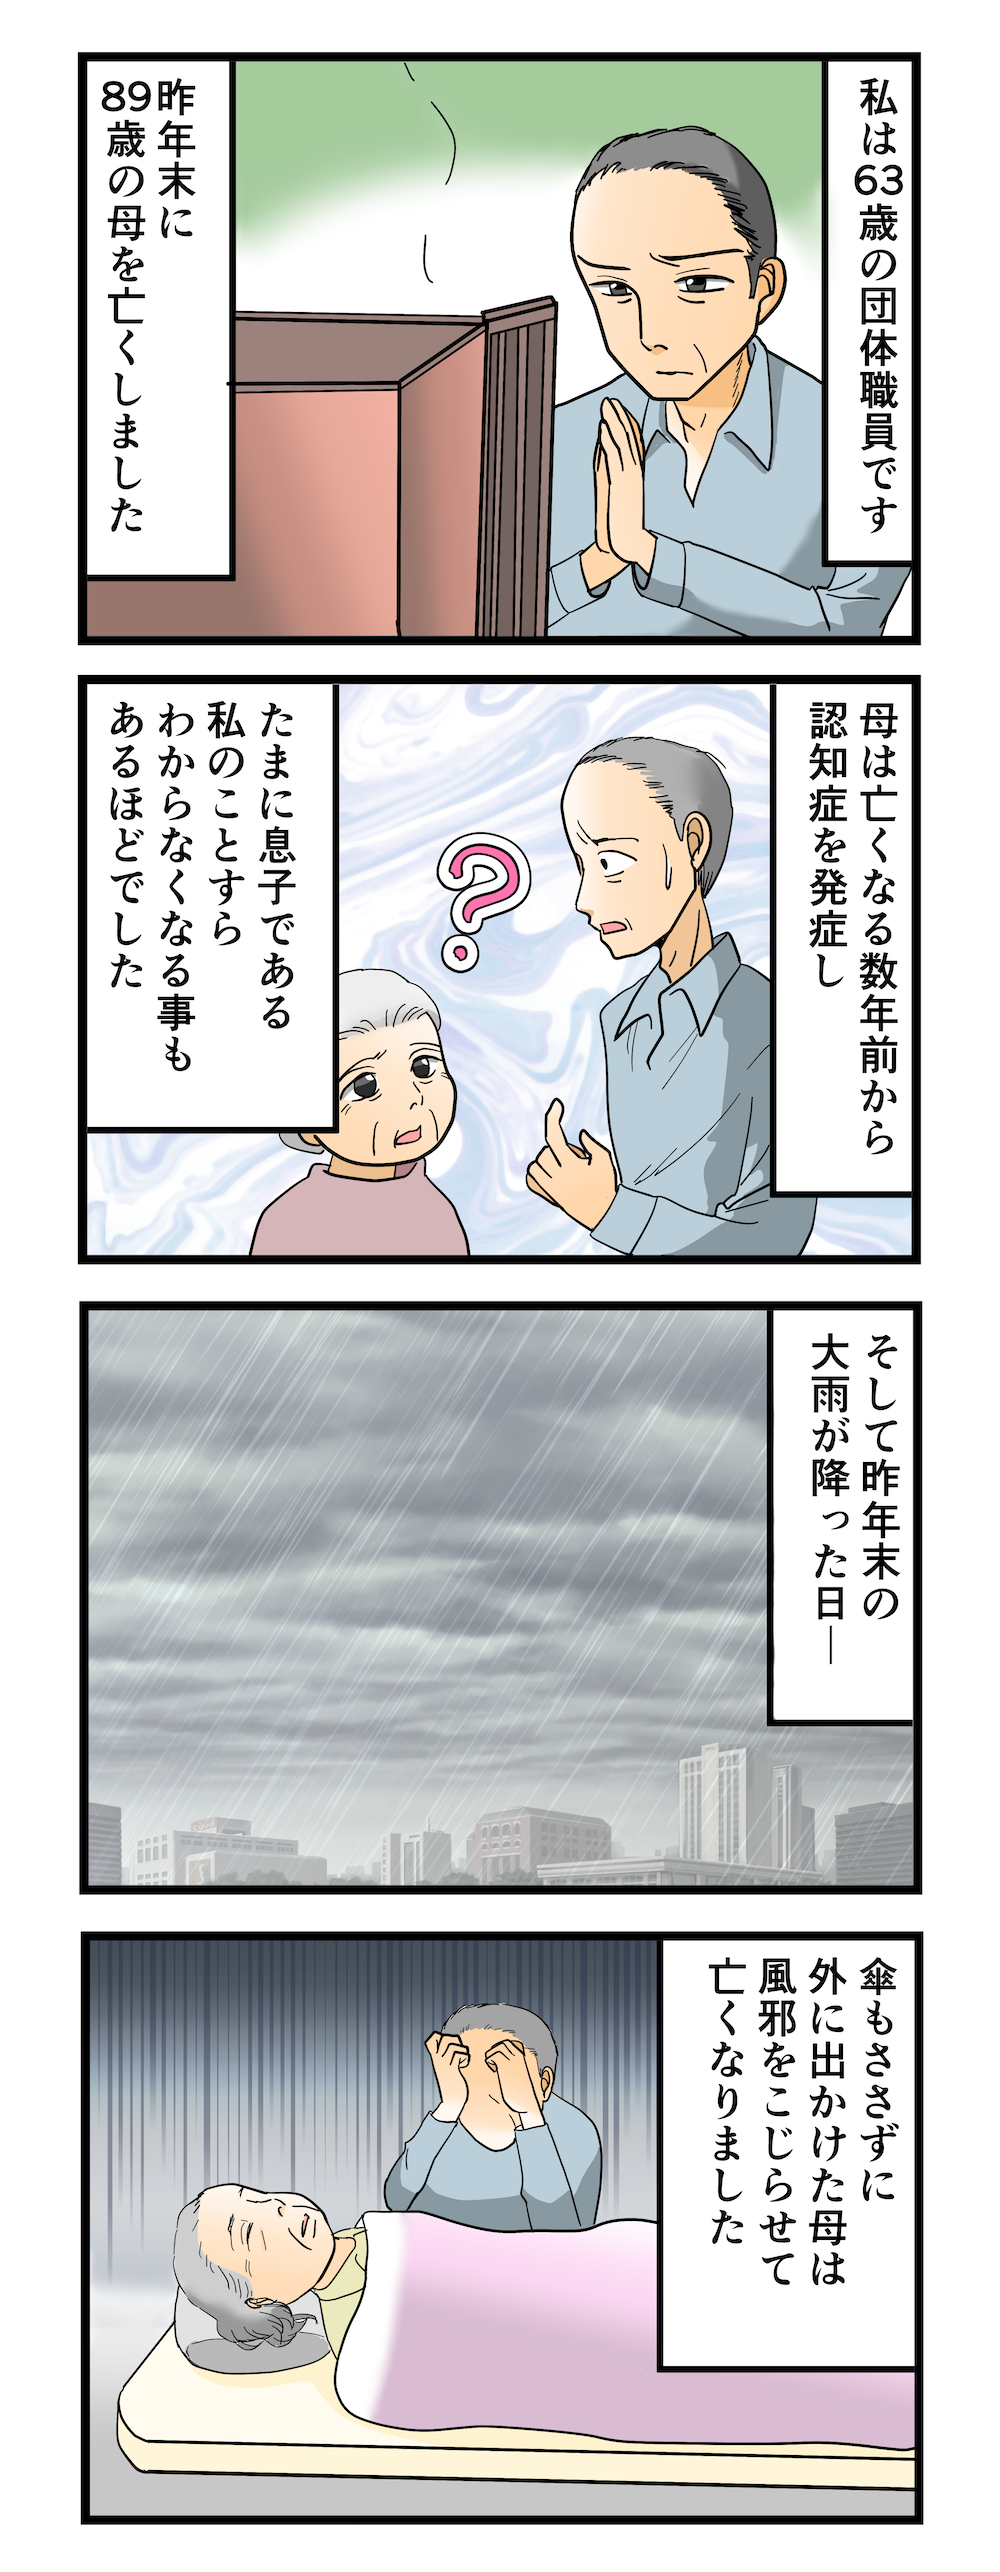 【漫画】「お母さん、どうして...」認知症の母が大雨の日に外へ。その理由を葬儀後に知って涙 1.png